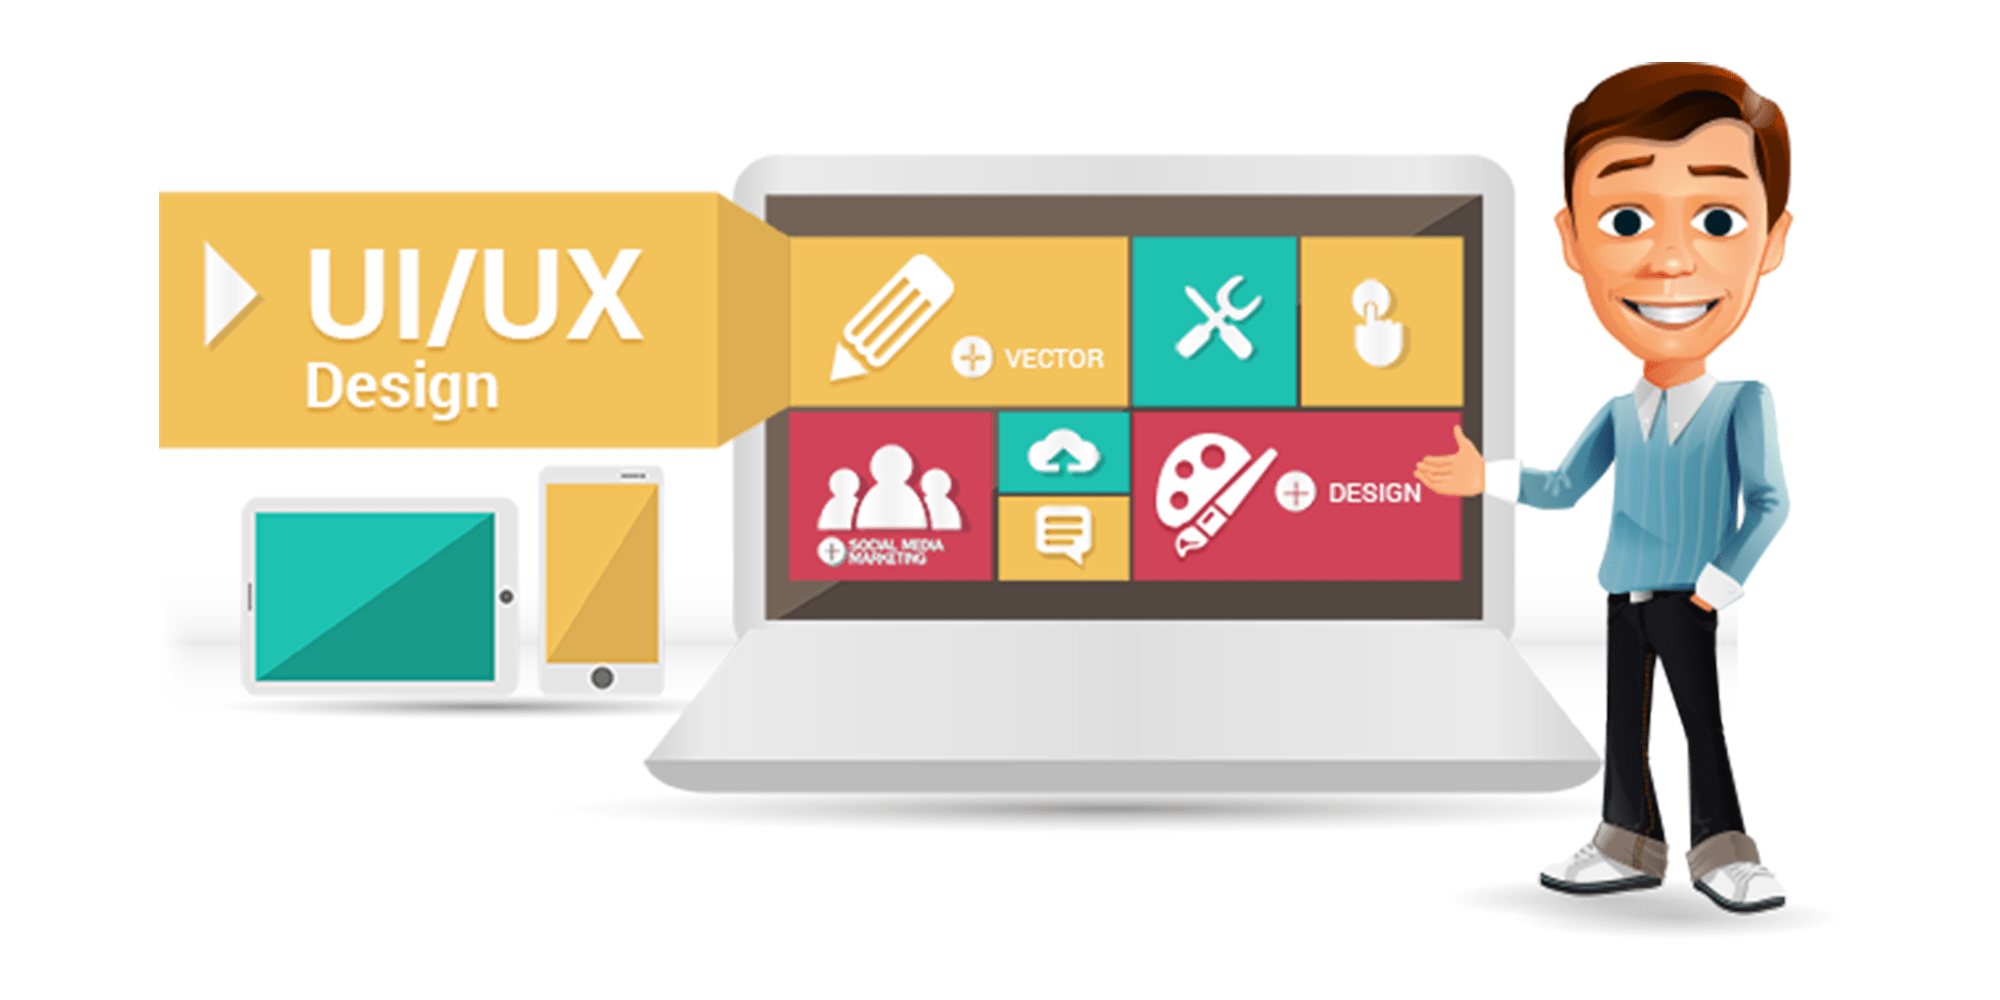 UI/UX Design Service Providers